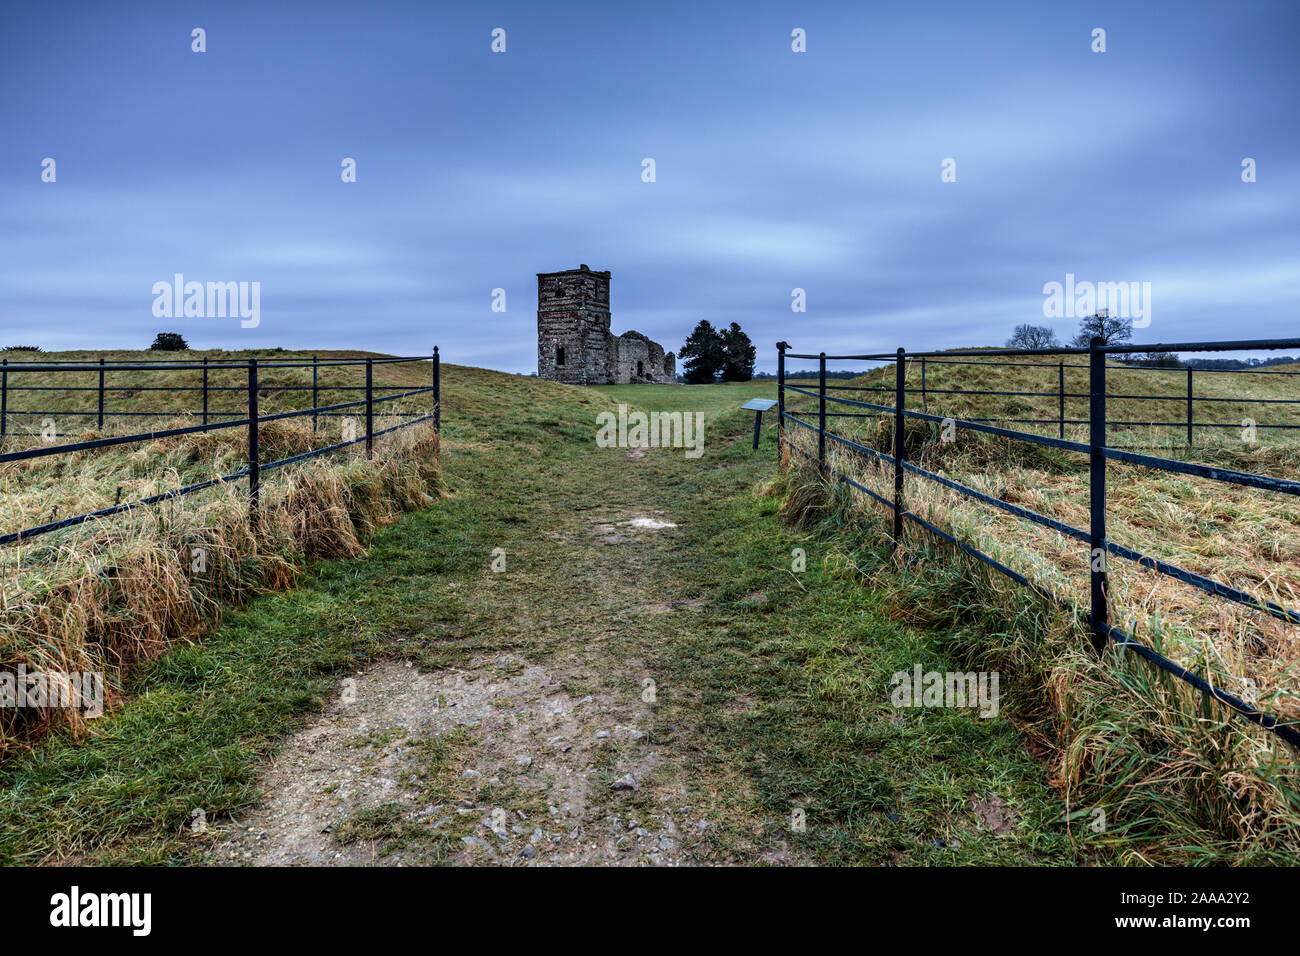 Las ruinas de la iglesia medieval de Knowlton y albarradas se encuentra en el centro de un ritual Neolítico henge escalonado. Supuestamente el lugar más embrujada en Dorset. Foto de stock